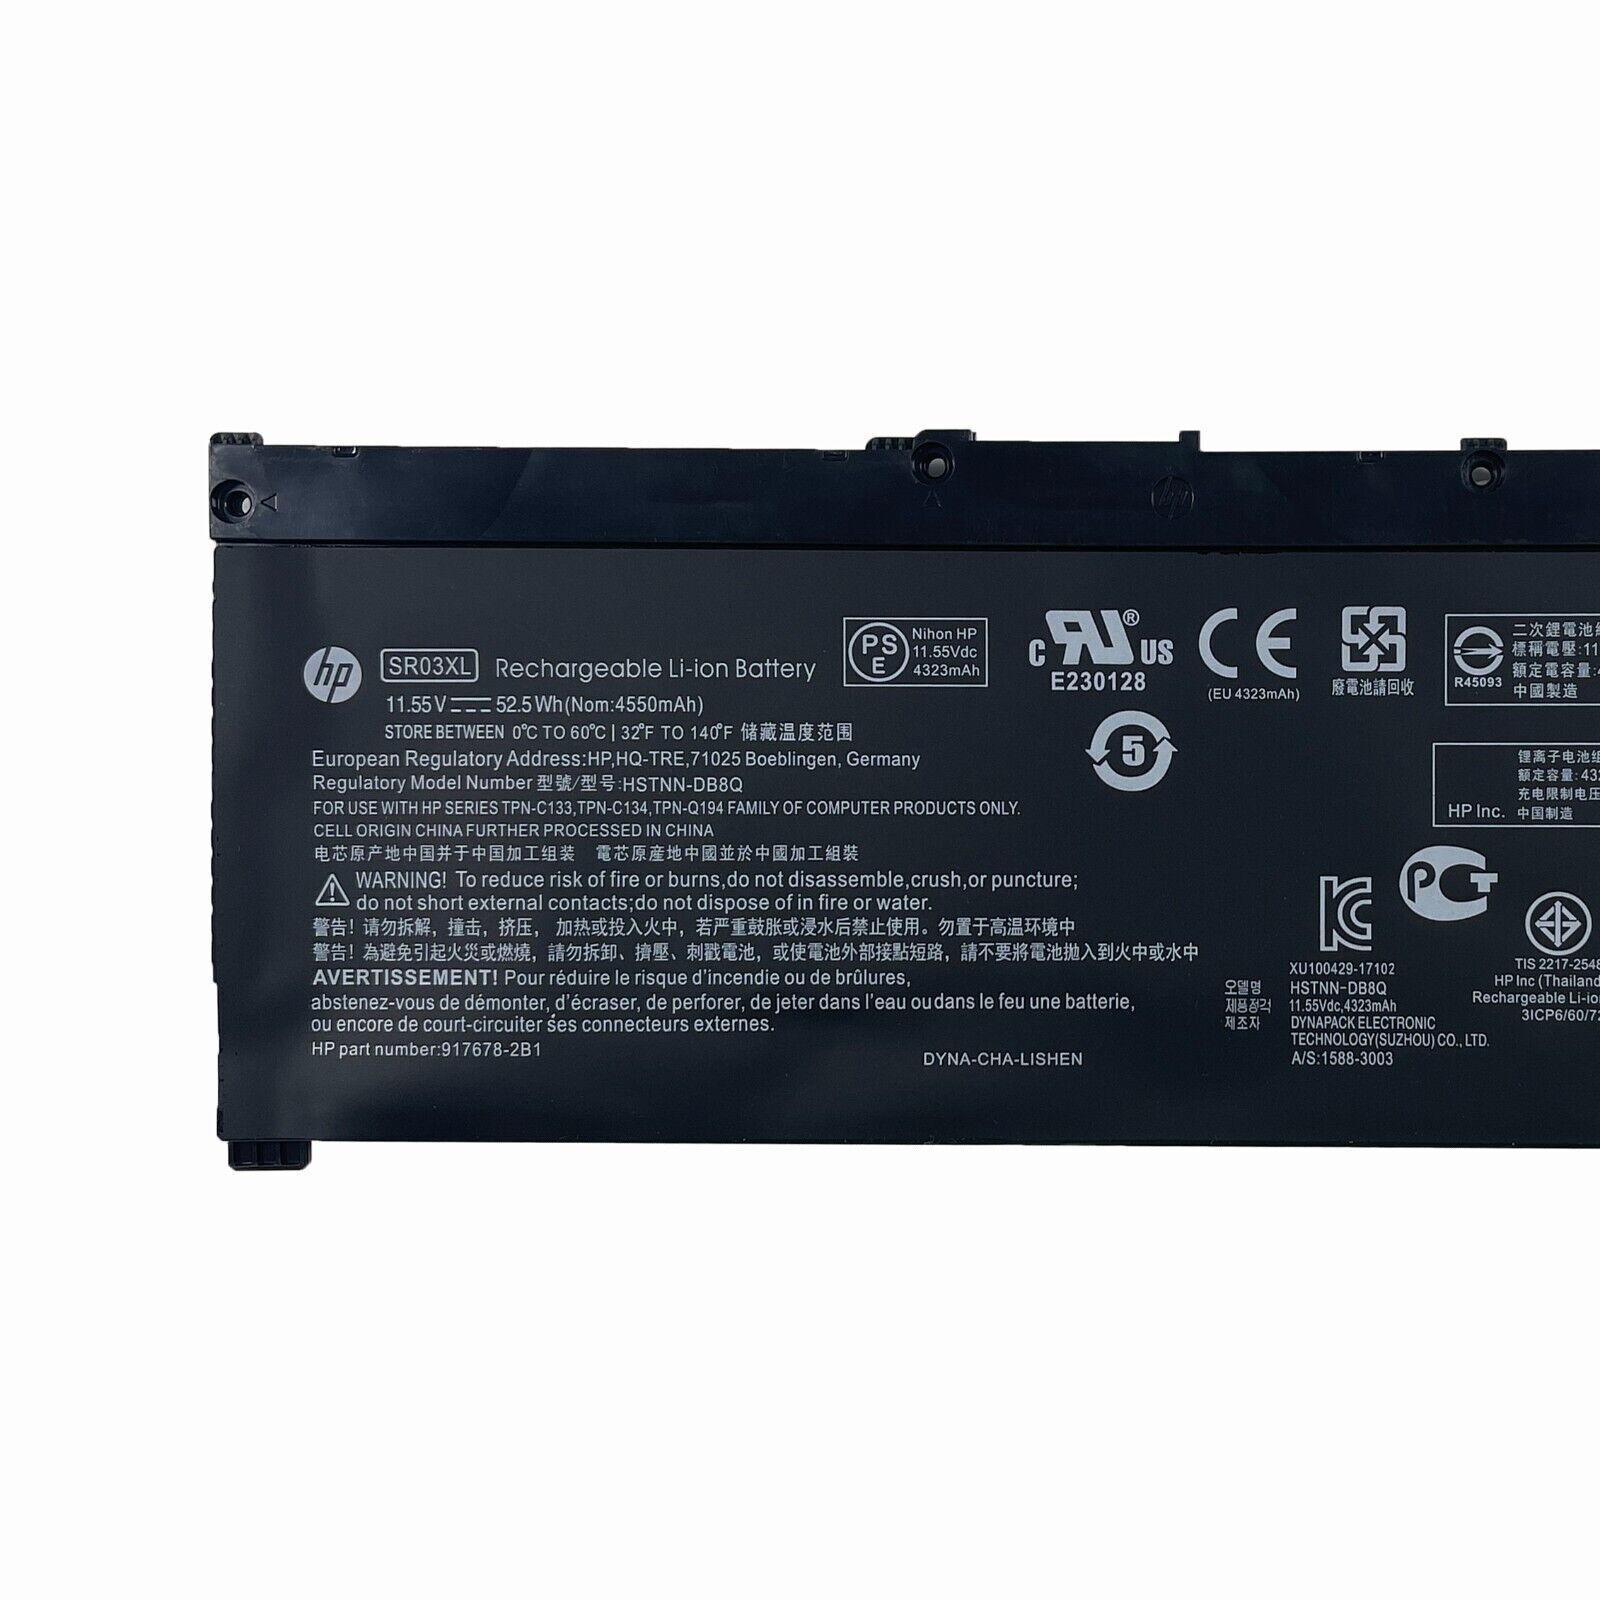 OEM 52.5Wh SR03XL Battery For HP Envy 15-cp 17-bw Pavilion 15-cx L08855-855 US